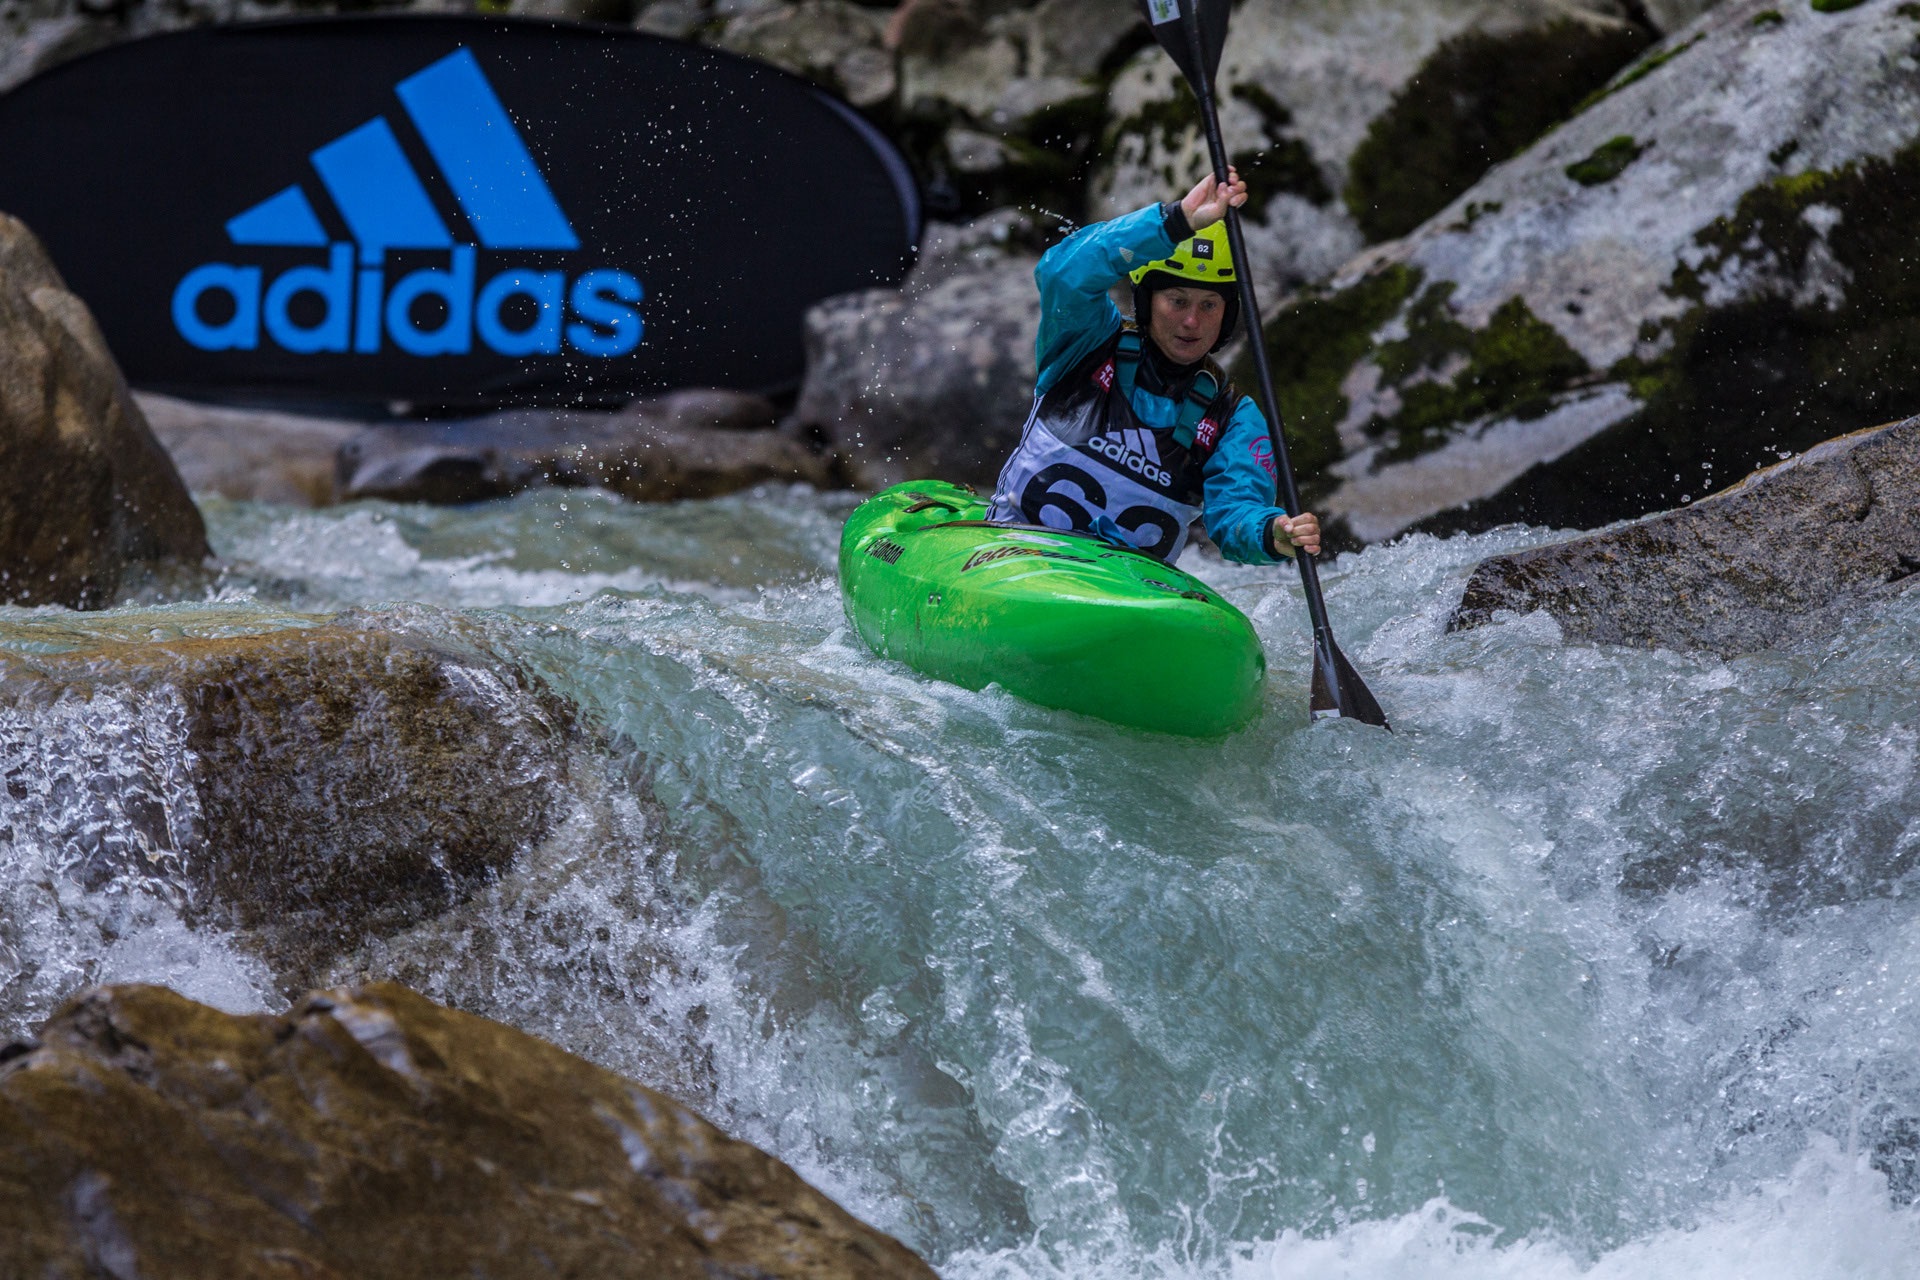 Adidas-Sickline: The Extreme Kayak World - Anne Huebner | coaching